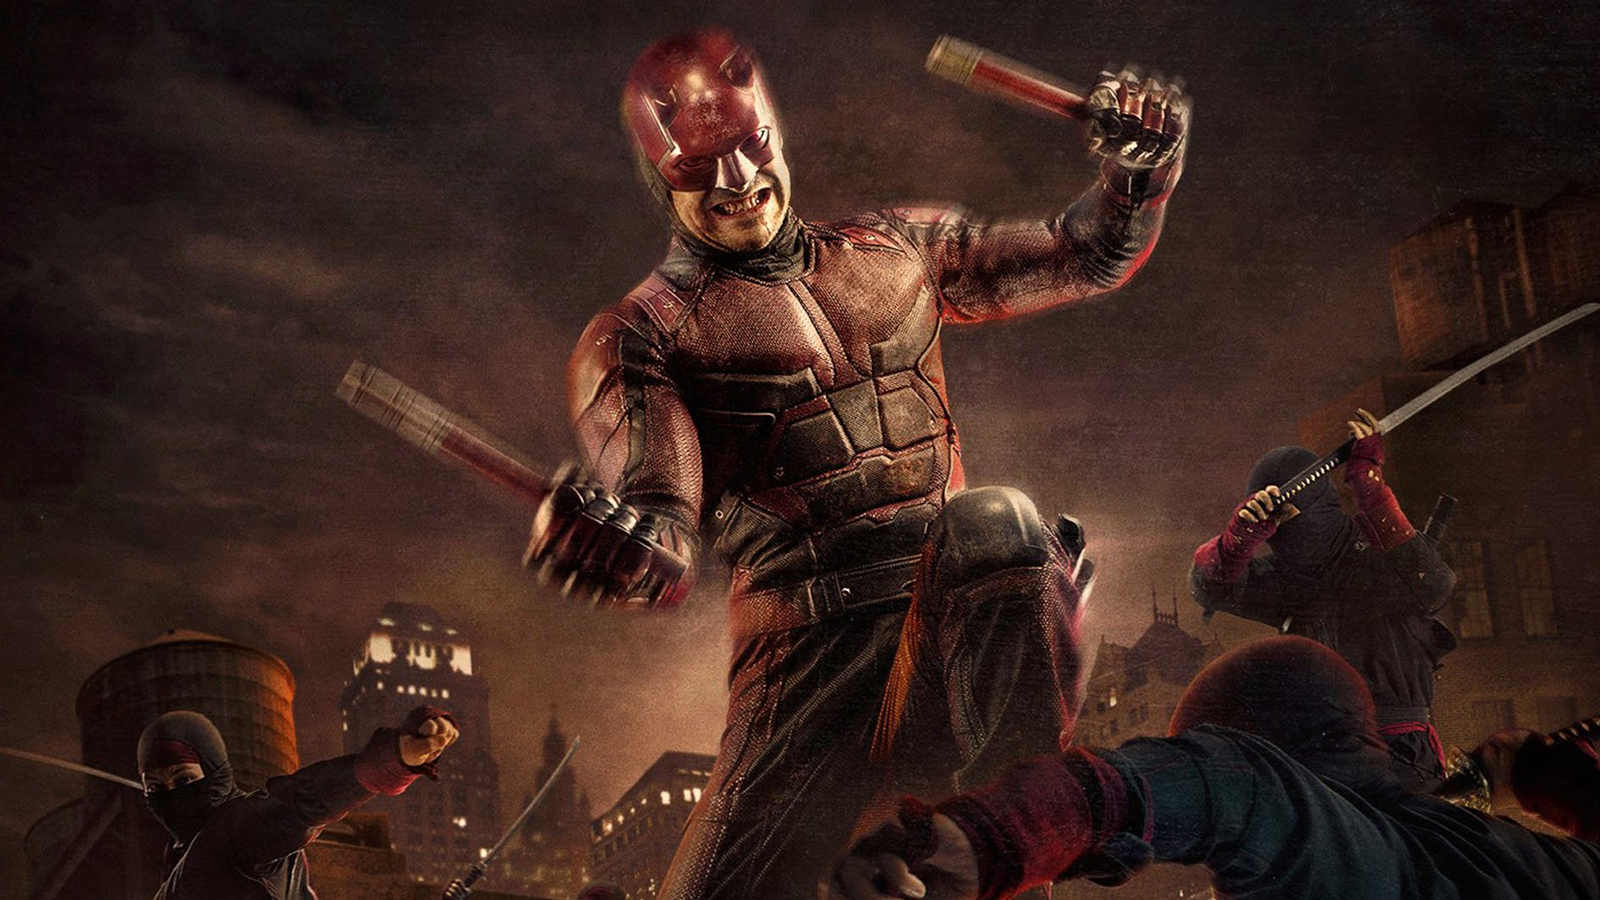 Daredevil fighting the Hand's ninjas in Daredevil Season 2 key art